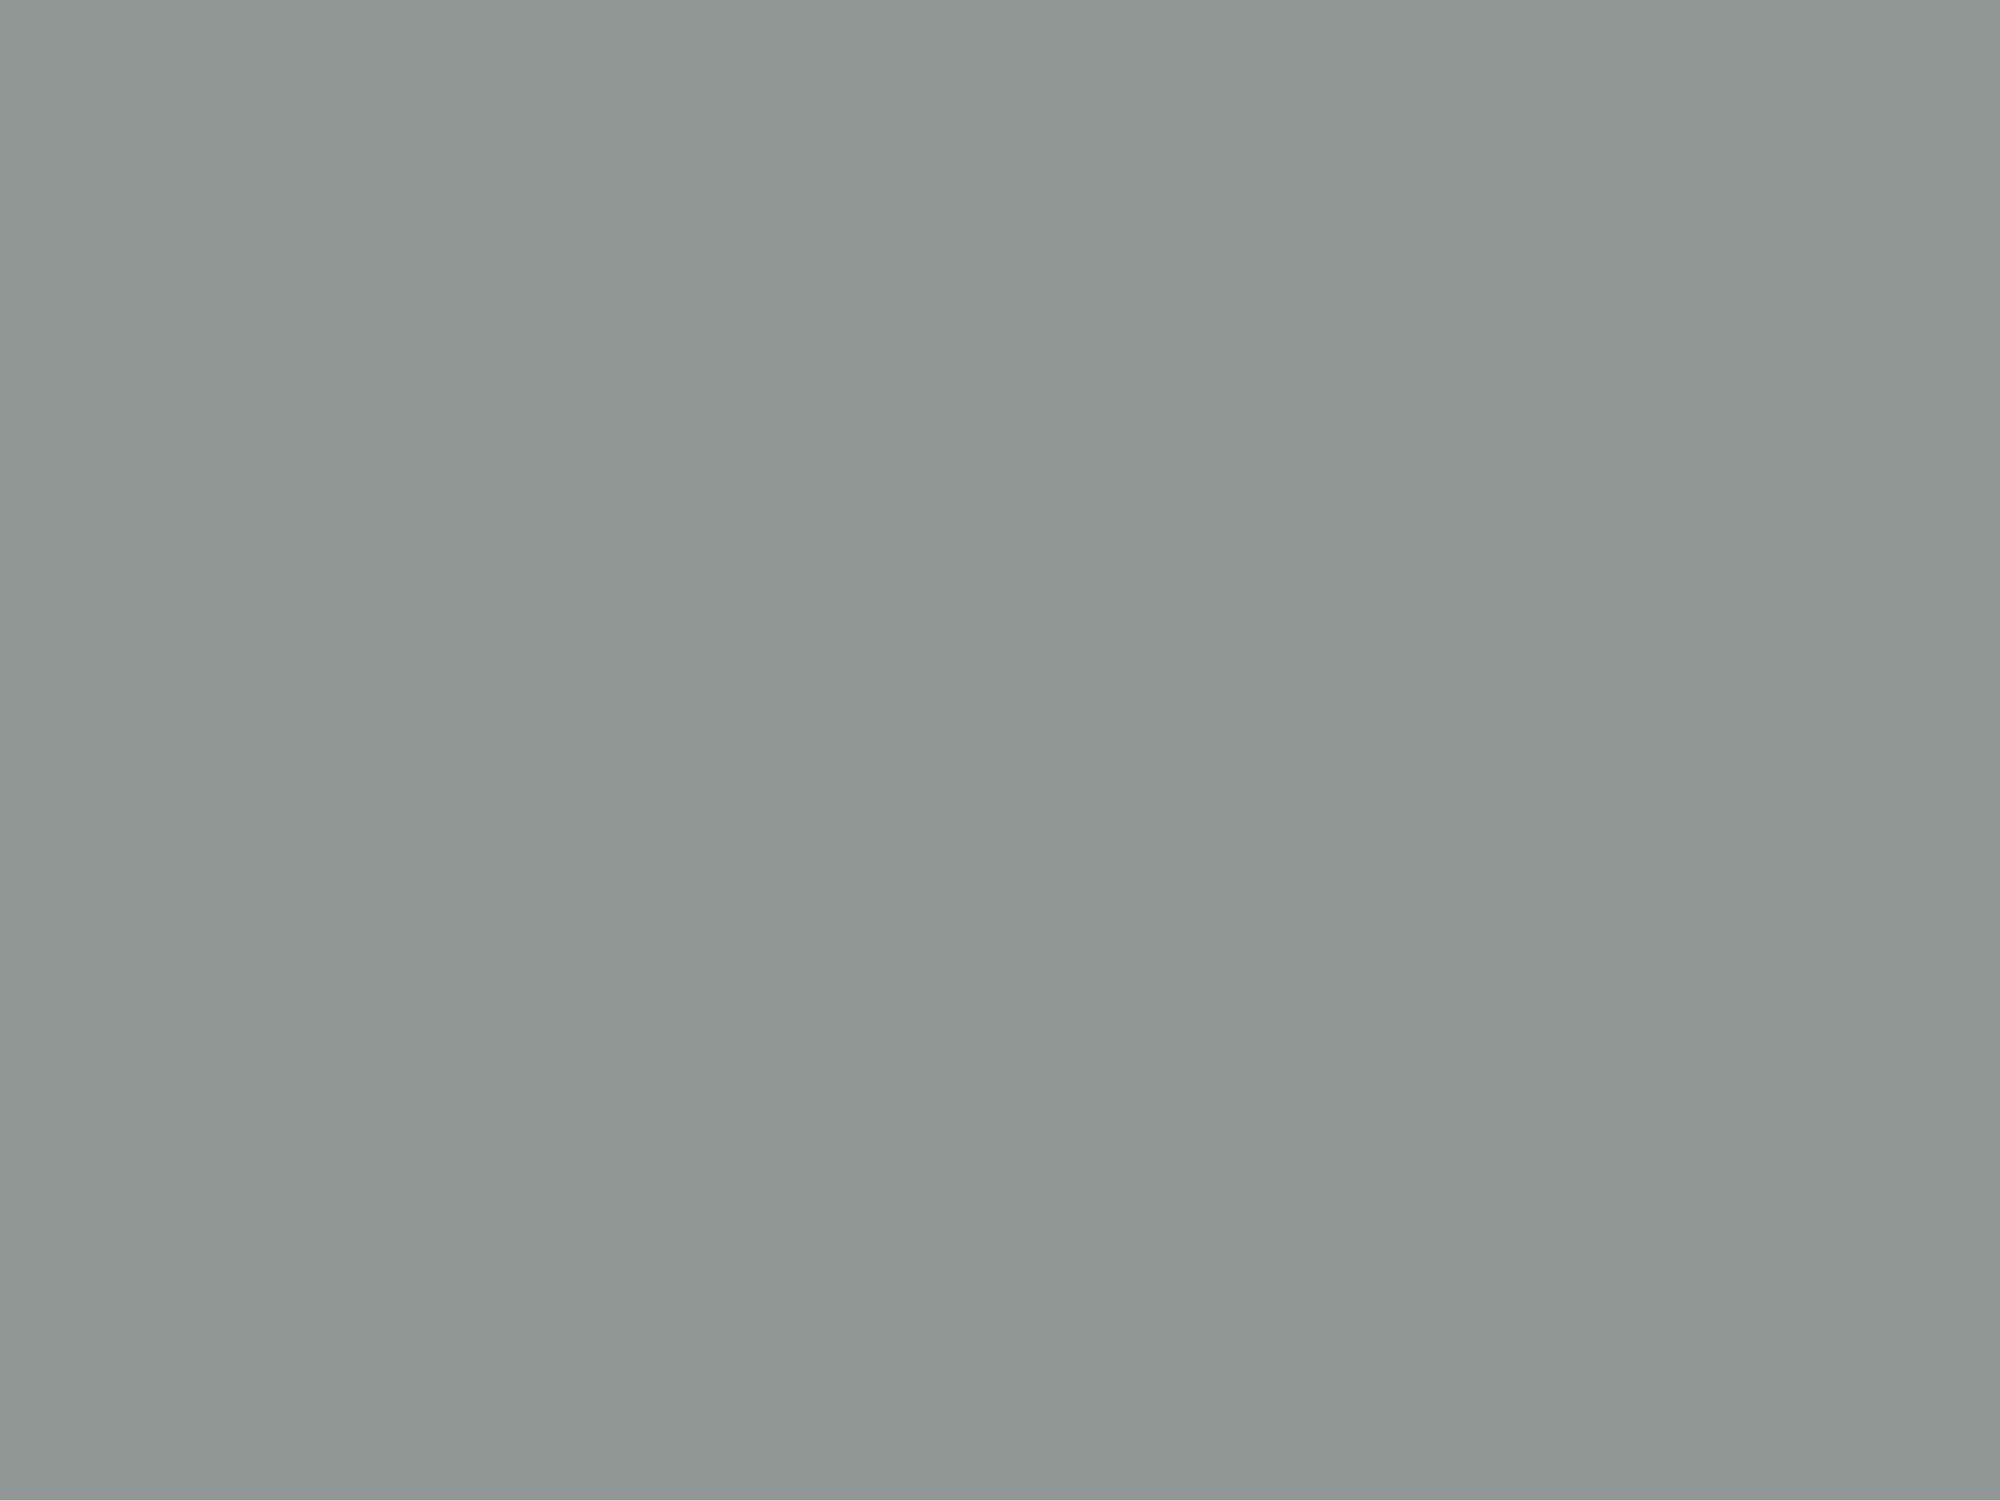 Василий Верещагин. Апофеоз войны (фрагмент). 1871. Государственная Третьяковская галерея, Москва